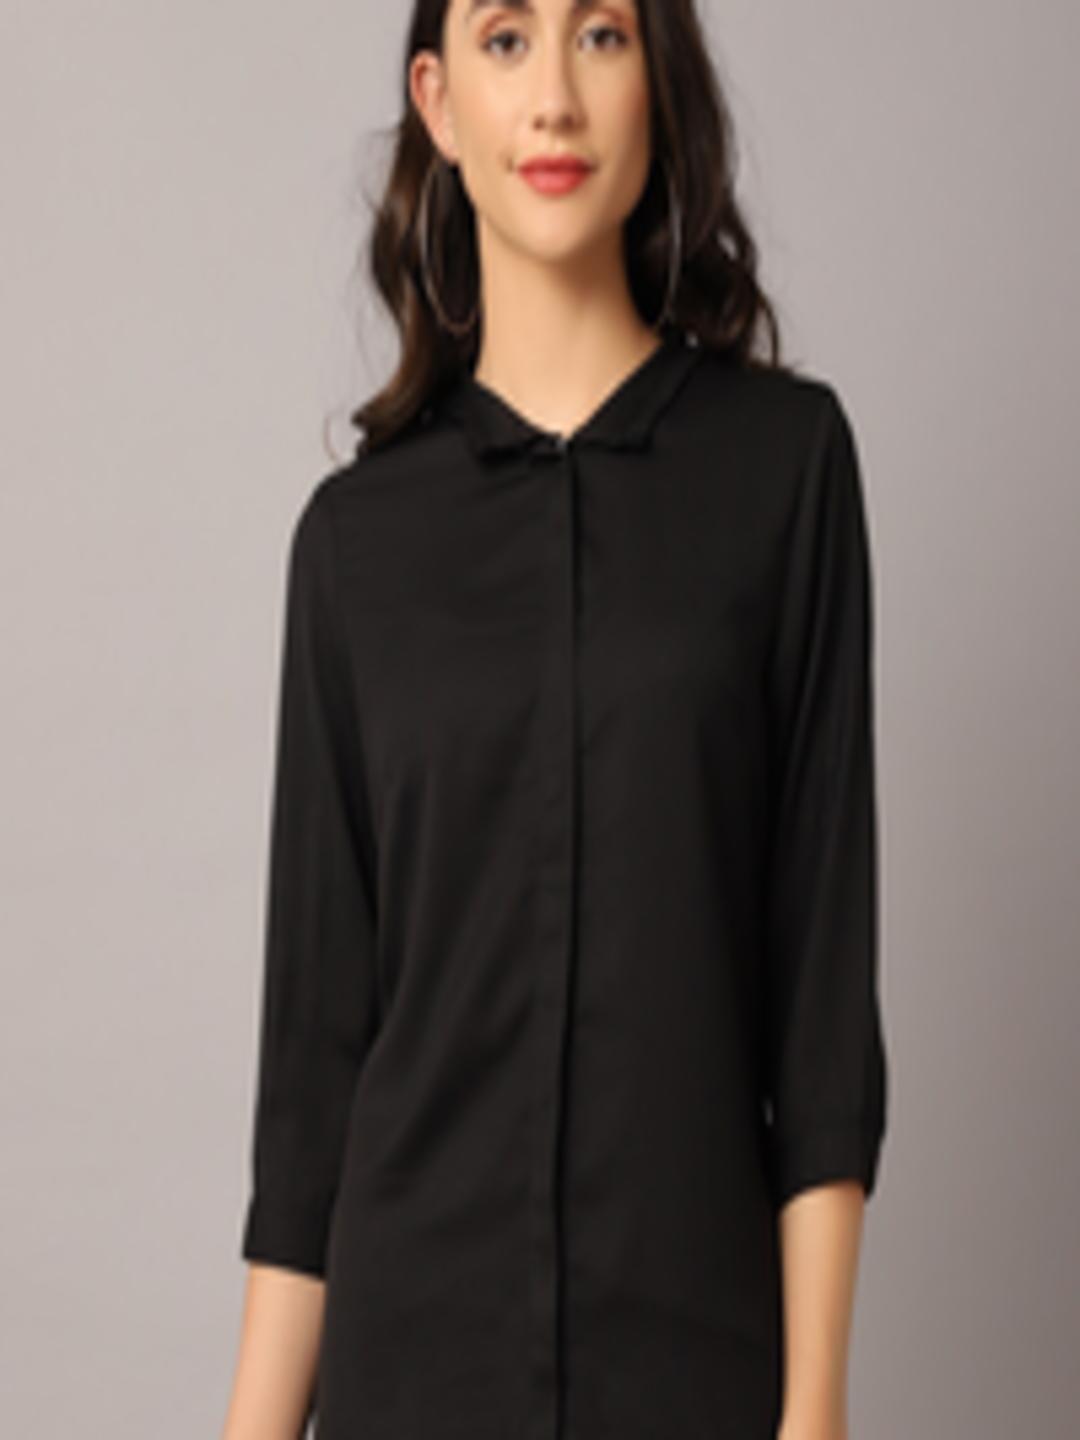 Buy Crozo By Cantabil Women Black Casual Shirt - Shirts for Women ...